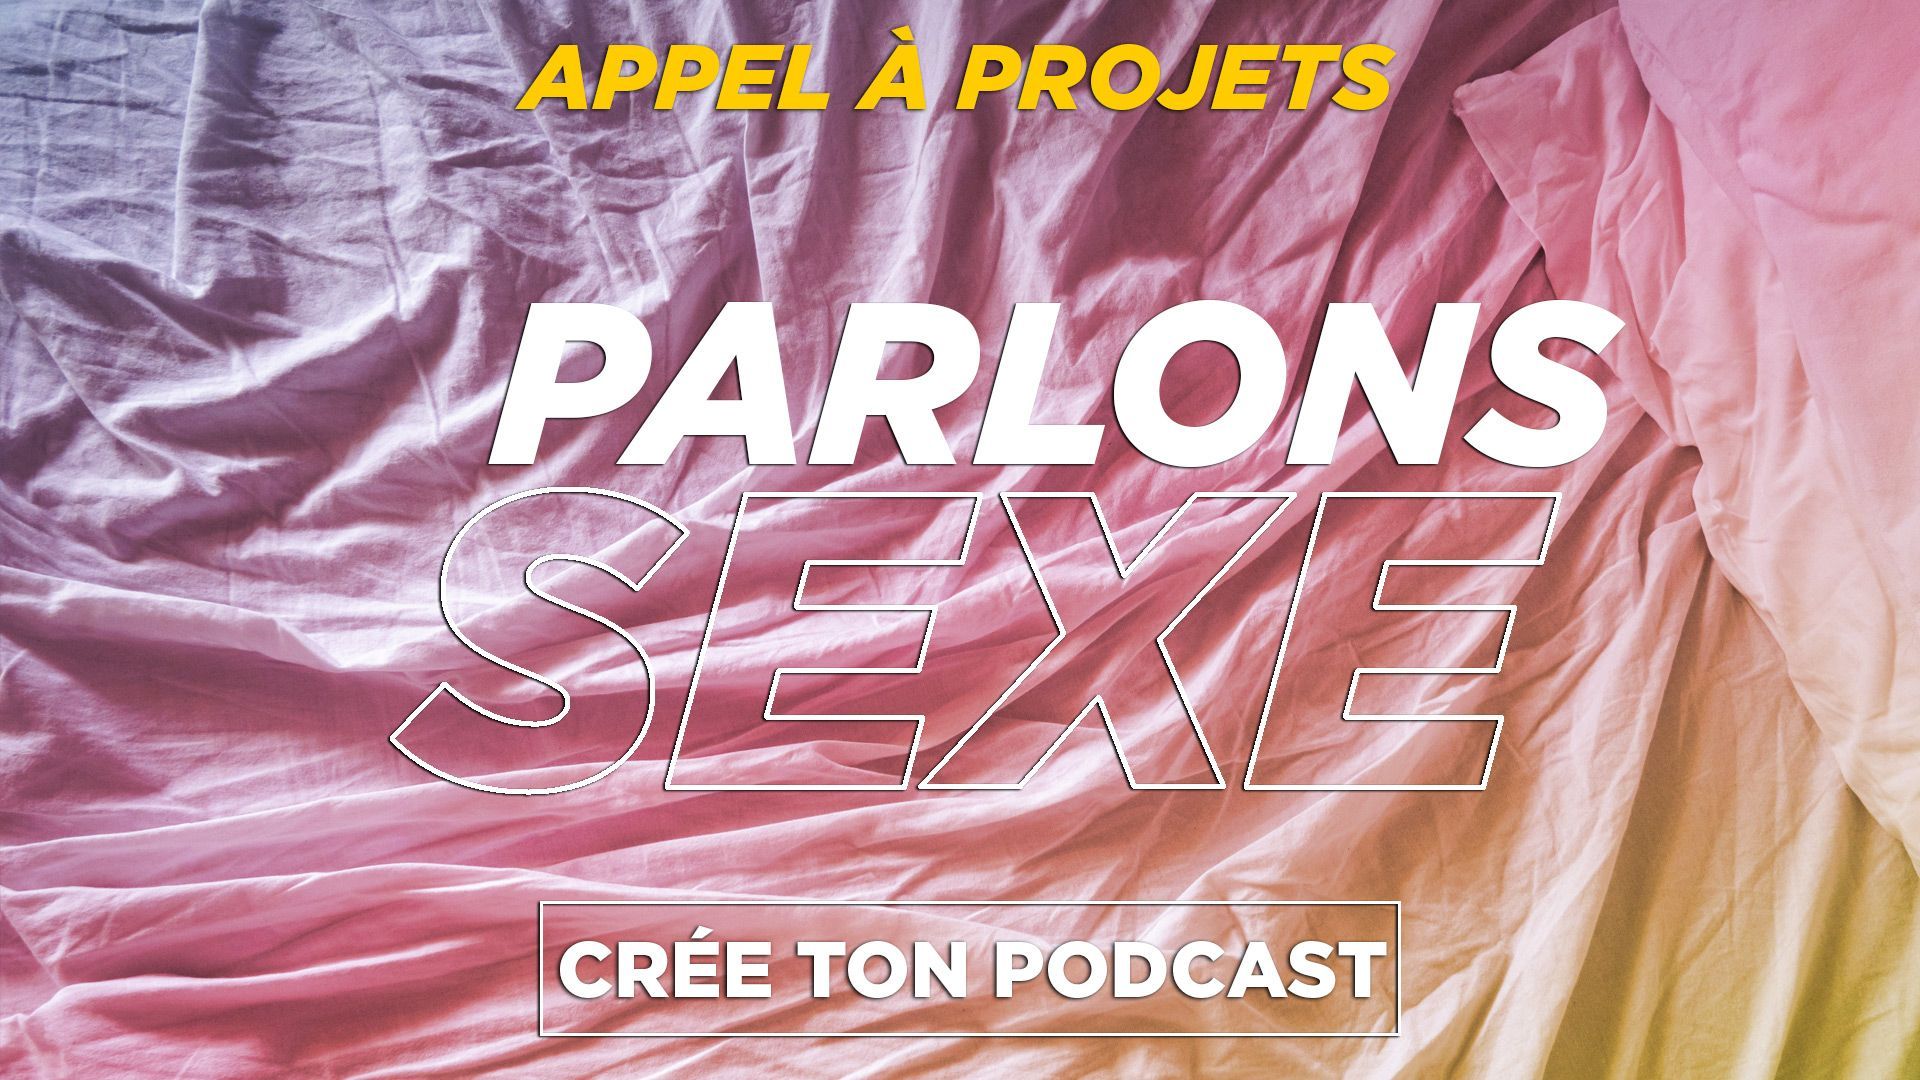 Nouvel appel à projets de podcast natif : "Parlons sexe !"